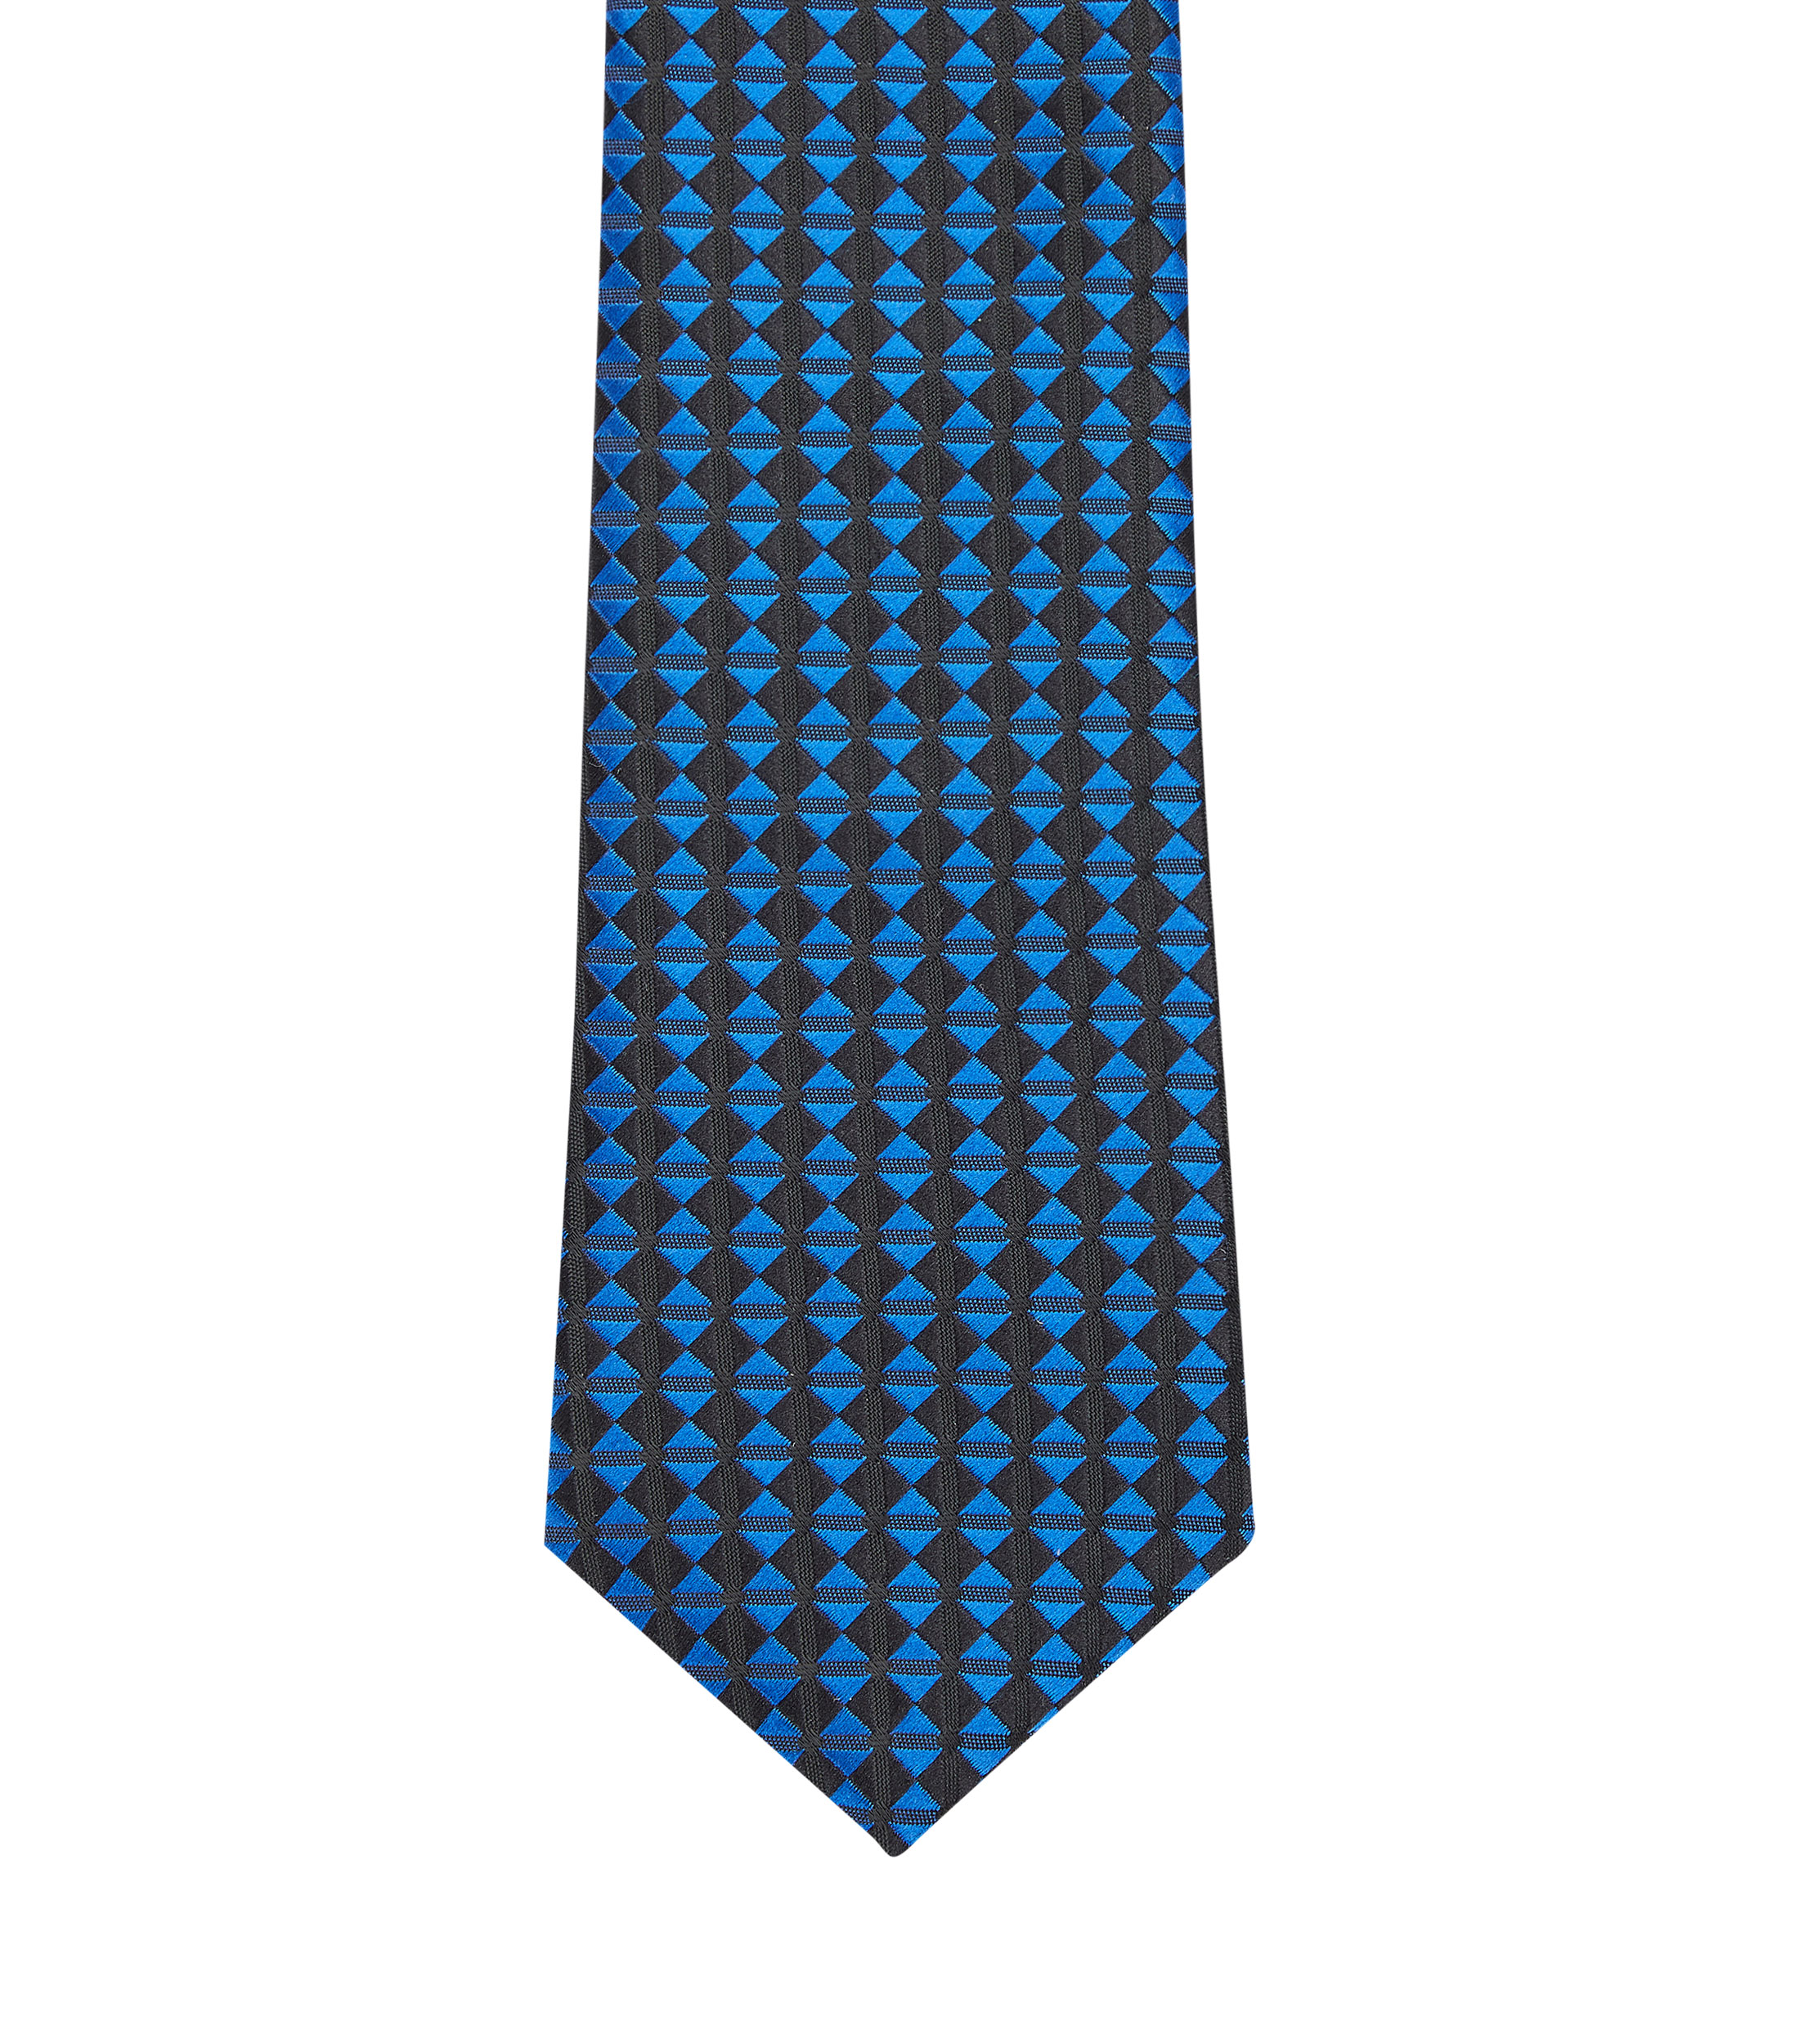 Zilery's: Corbata azul con triángulos Niño | El Palacio de Hierro